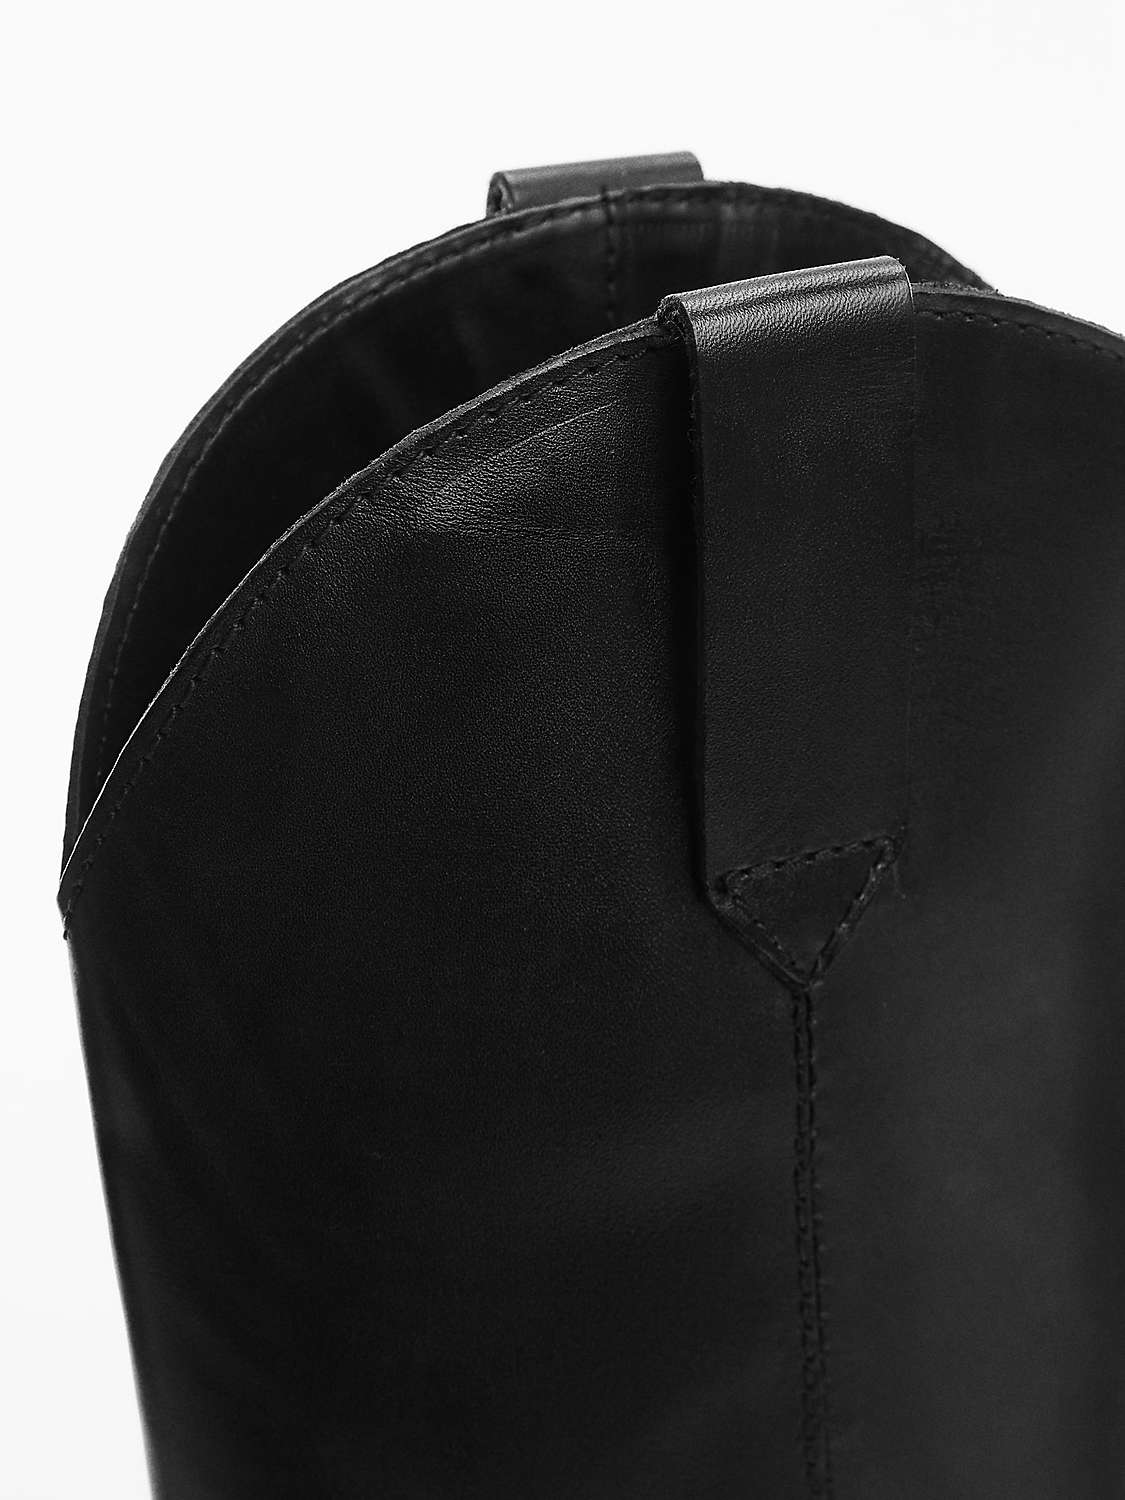 Buy Mango Plain Cowboy Leather Boots, Black Online at johnlewis.com